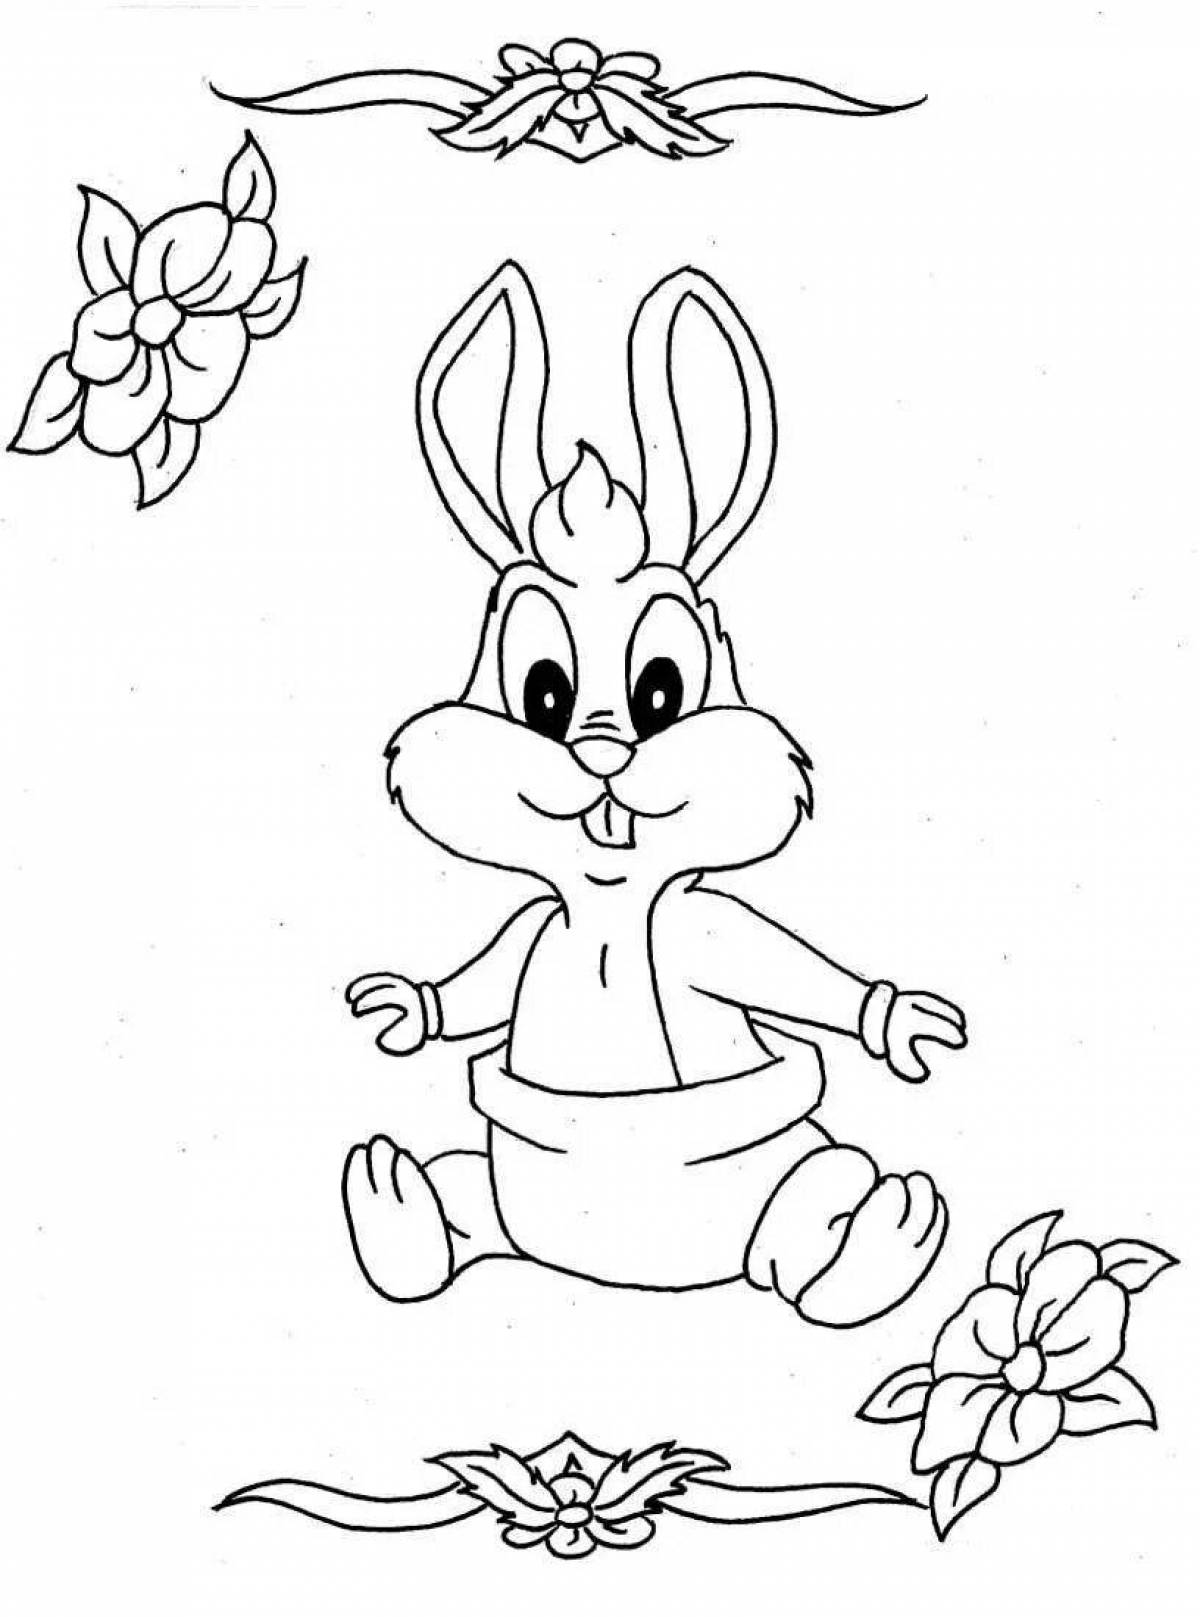 Weird cartoon hare coloring book